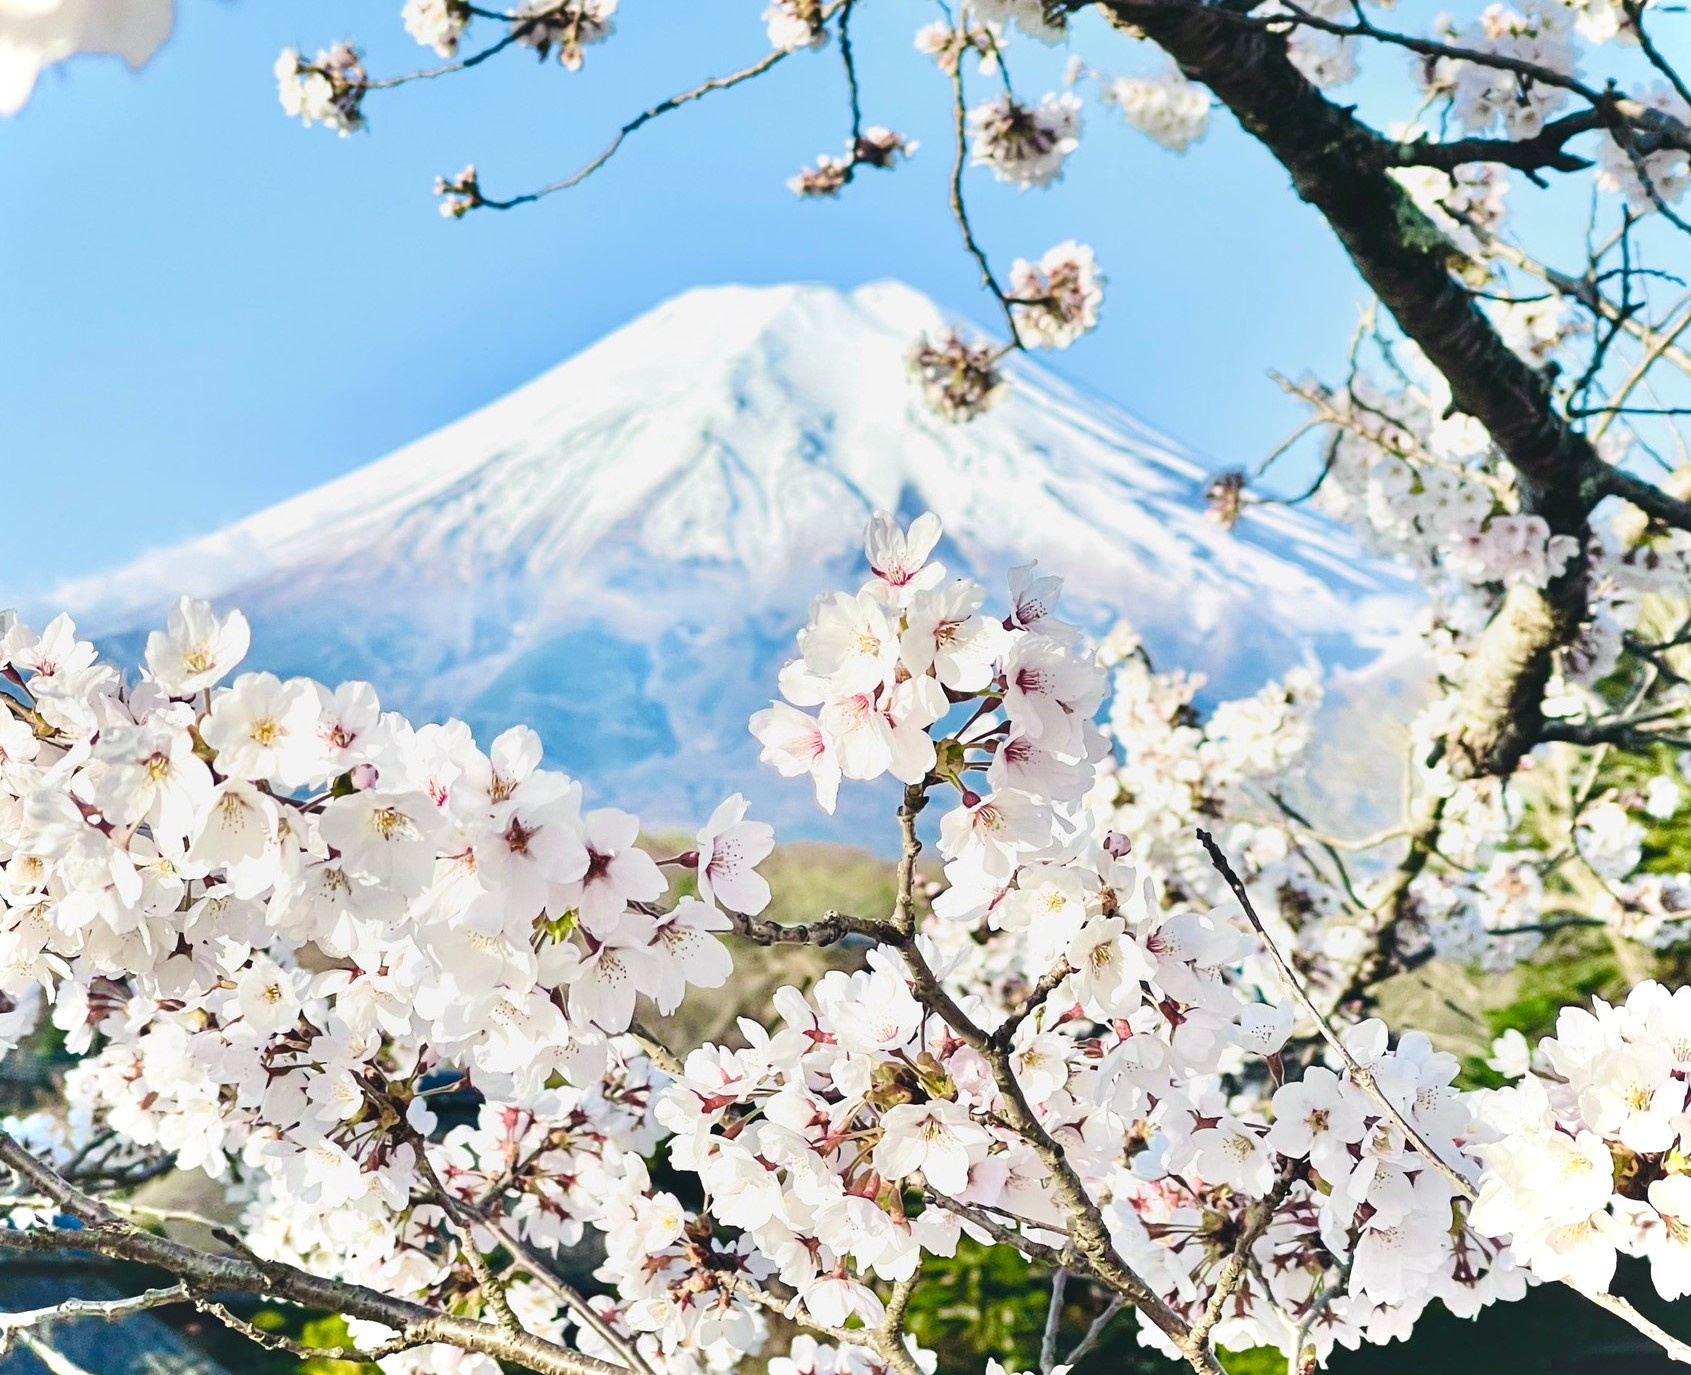 Bạn đang tìm kiếm địa điểm ngắm hoa anh đào đẹp ở Nhật Bản? Hãy đến với Asahi Luxstay và khám phá những điểm đến thơ mộng và lãng mạn nhất, để có thể tận hưởng cảm giác thanh tịnh khi đắm chìm vào thiên nhiên bình yên.